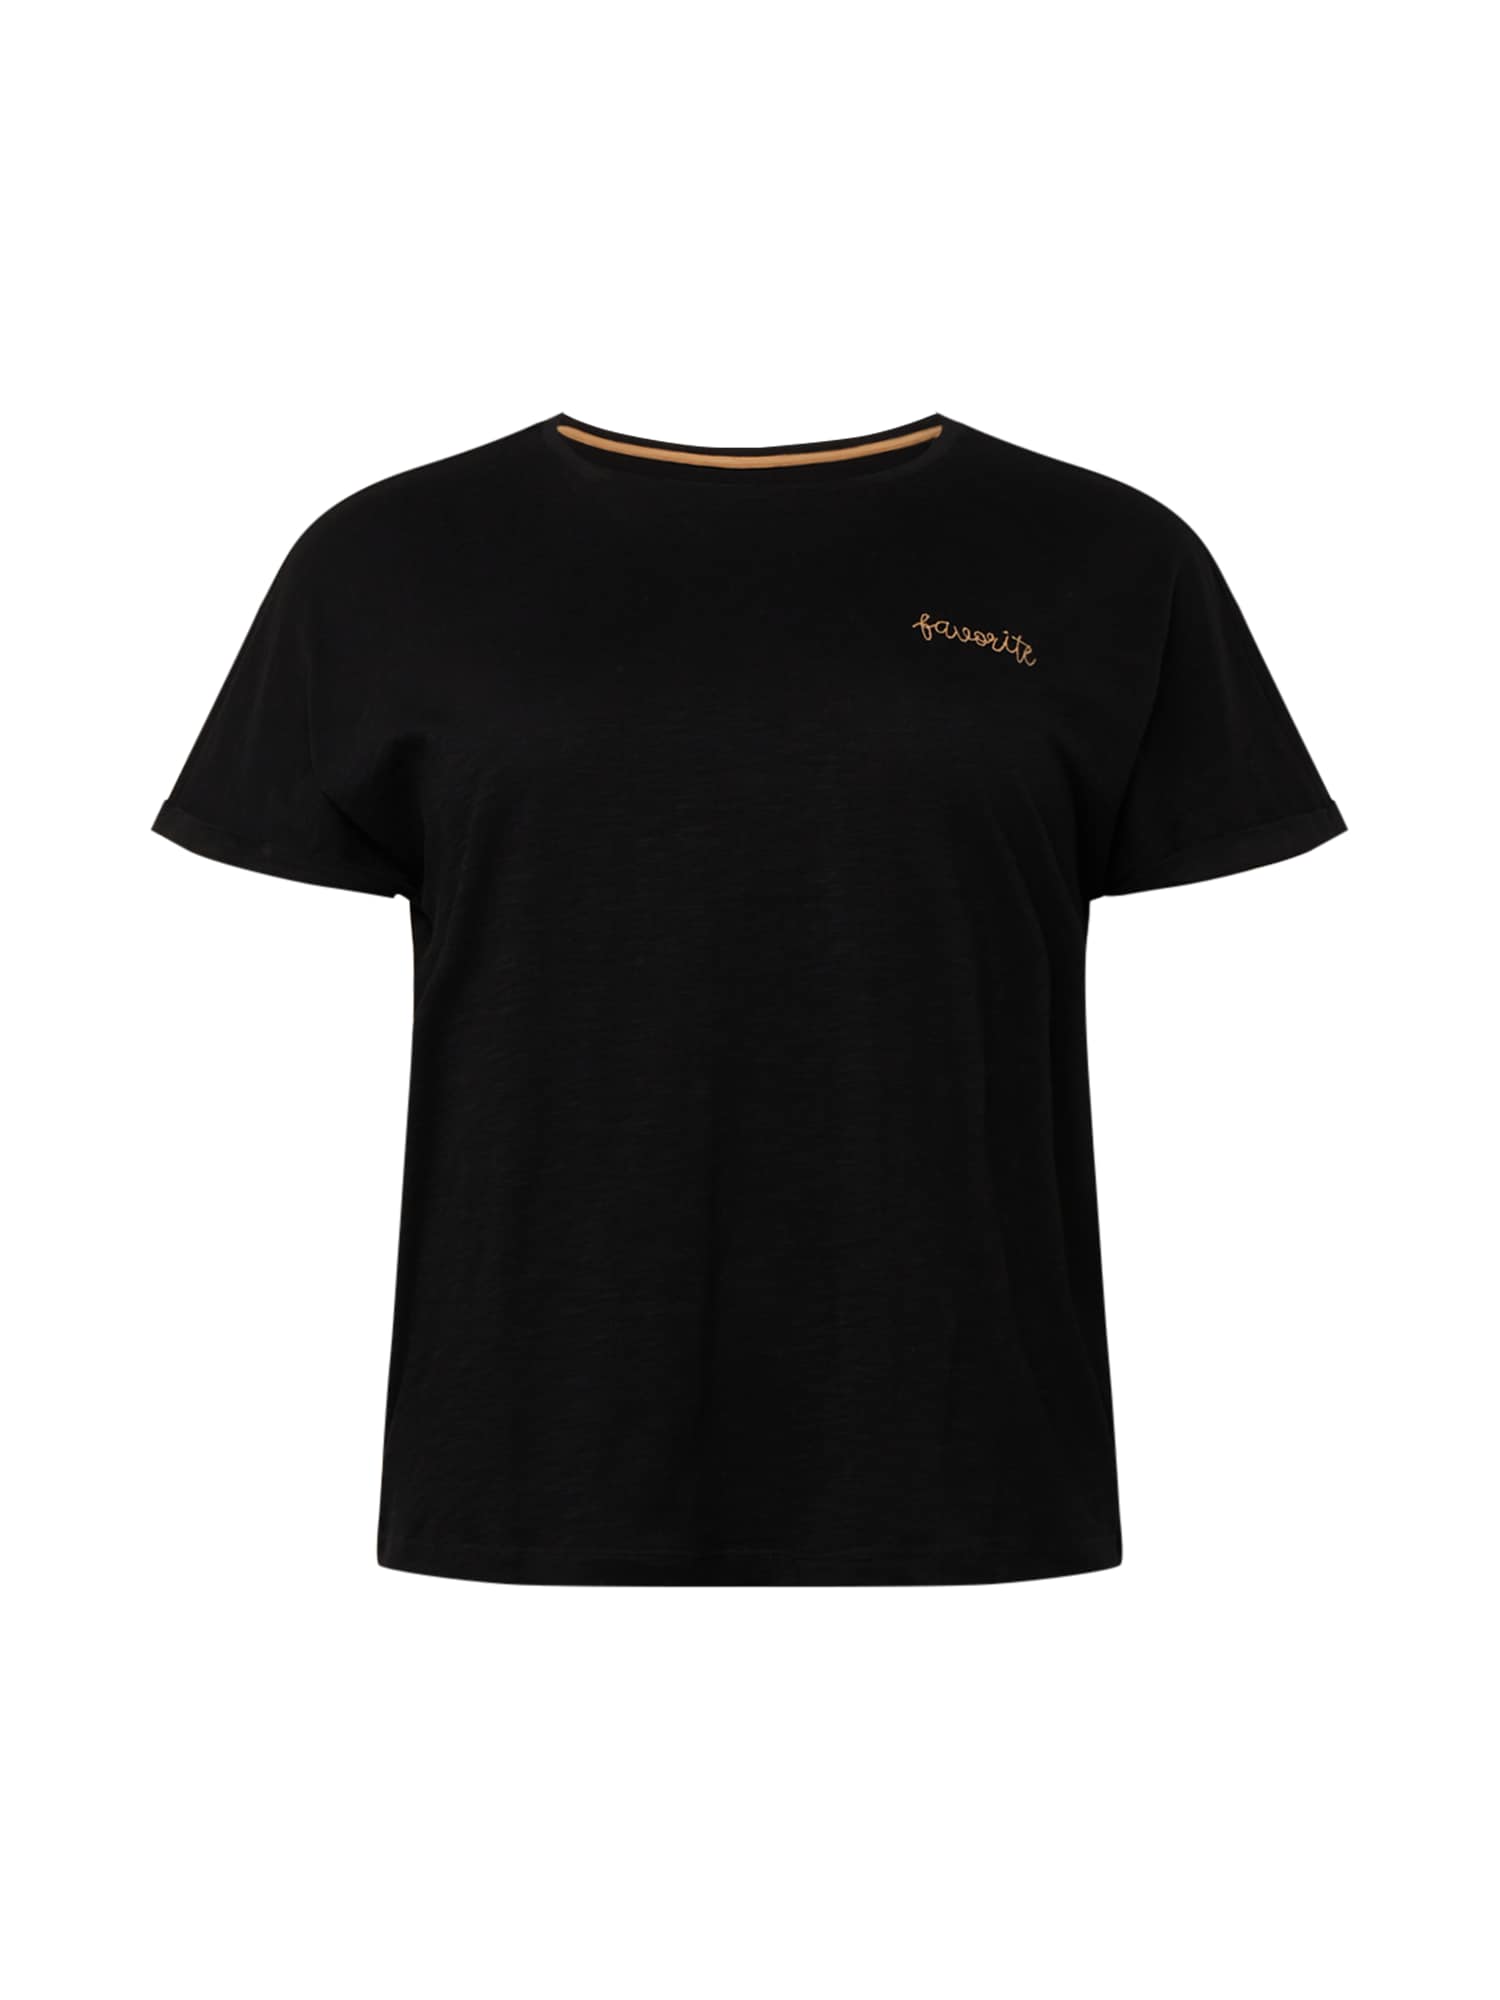 Tom Tailor Women + Marškinėliai juoda / gelsvai pilka spalva